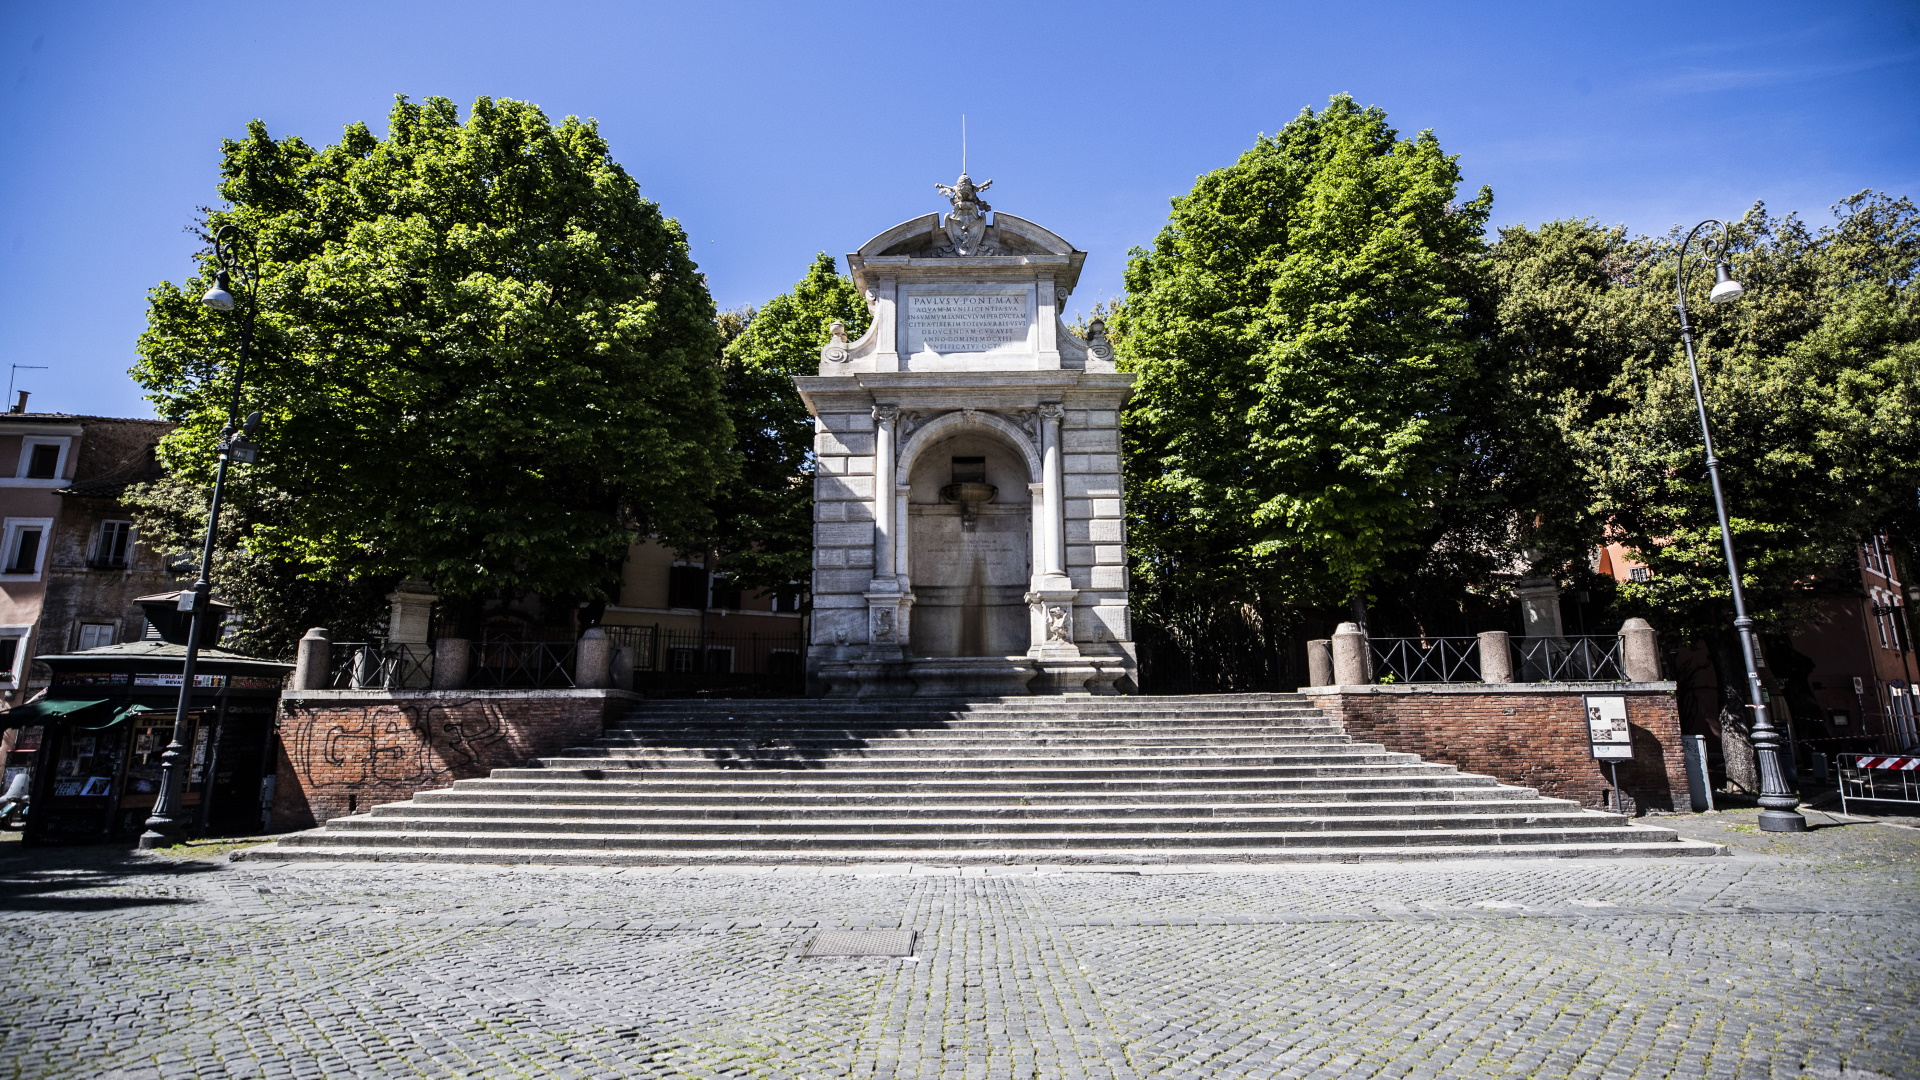 Fontana dell'Acqua Paola in piazza trilussa